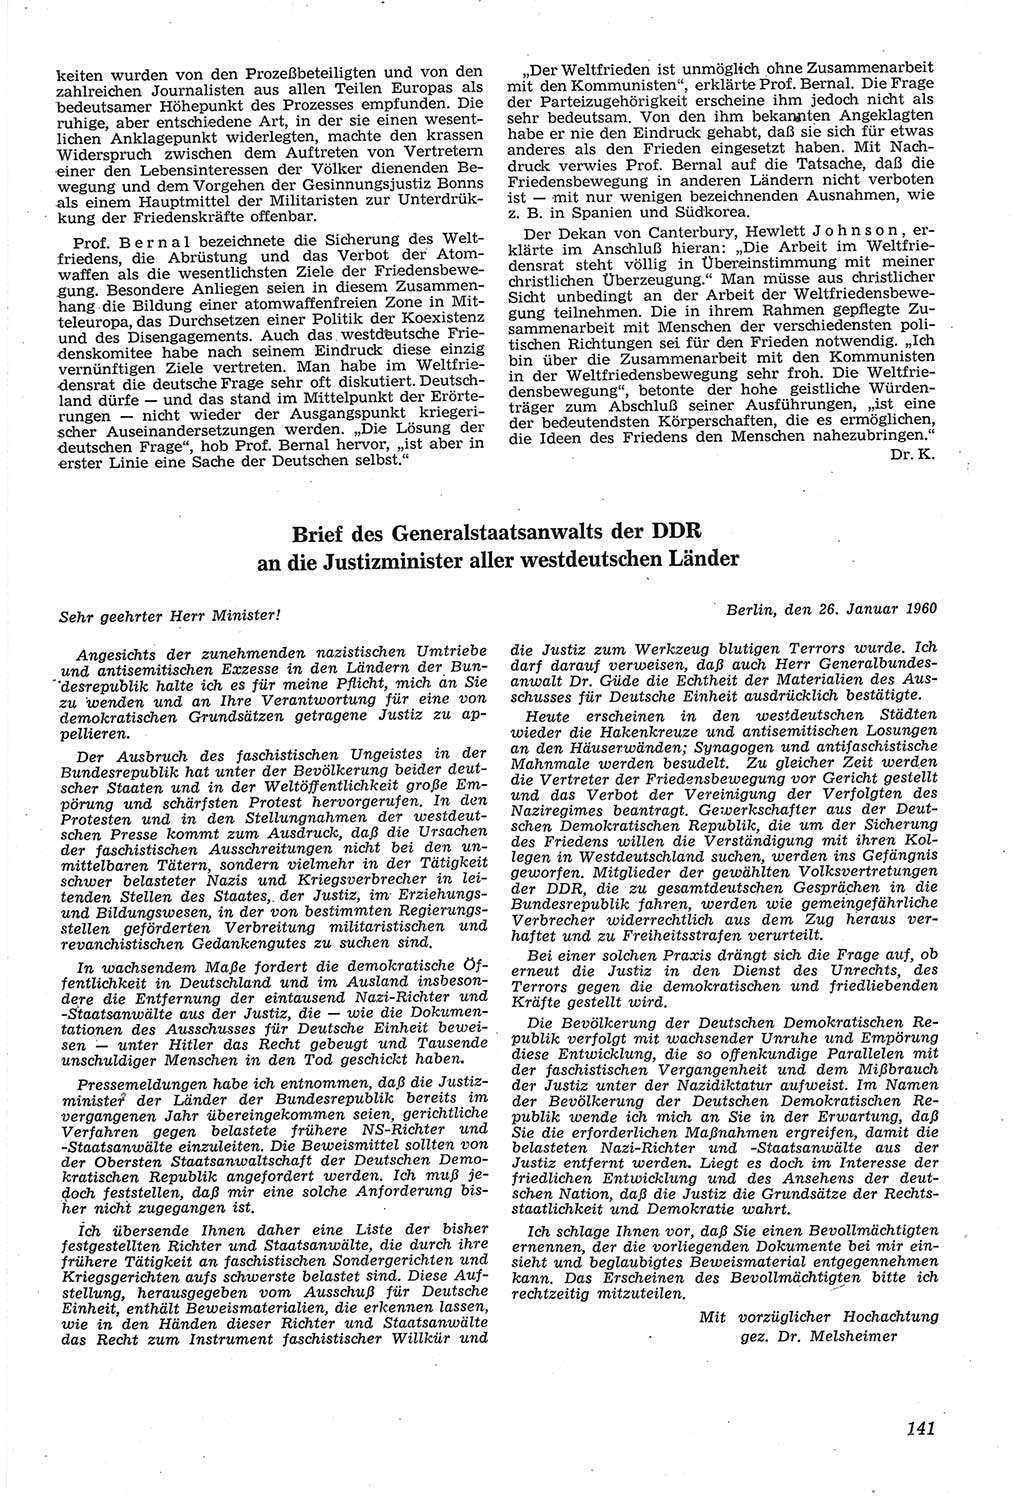 Neue Justiz (NJ), Zeitschrift für Recht und Rechtswissenschaft [Deutsche Demokratische Republik (DDR)], 14. Jahrgang 1960, Seite 141 (NJ DDR 1960, S. 141)